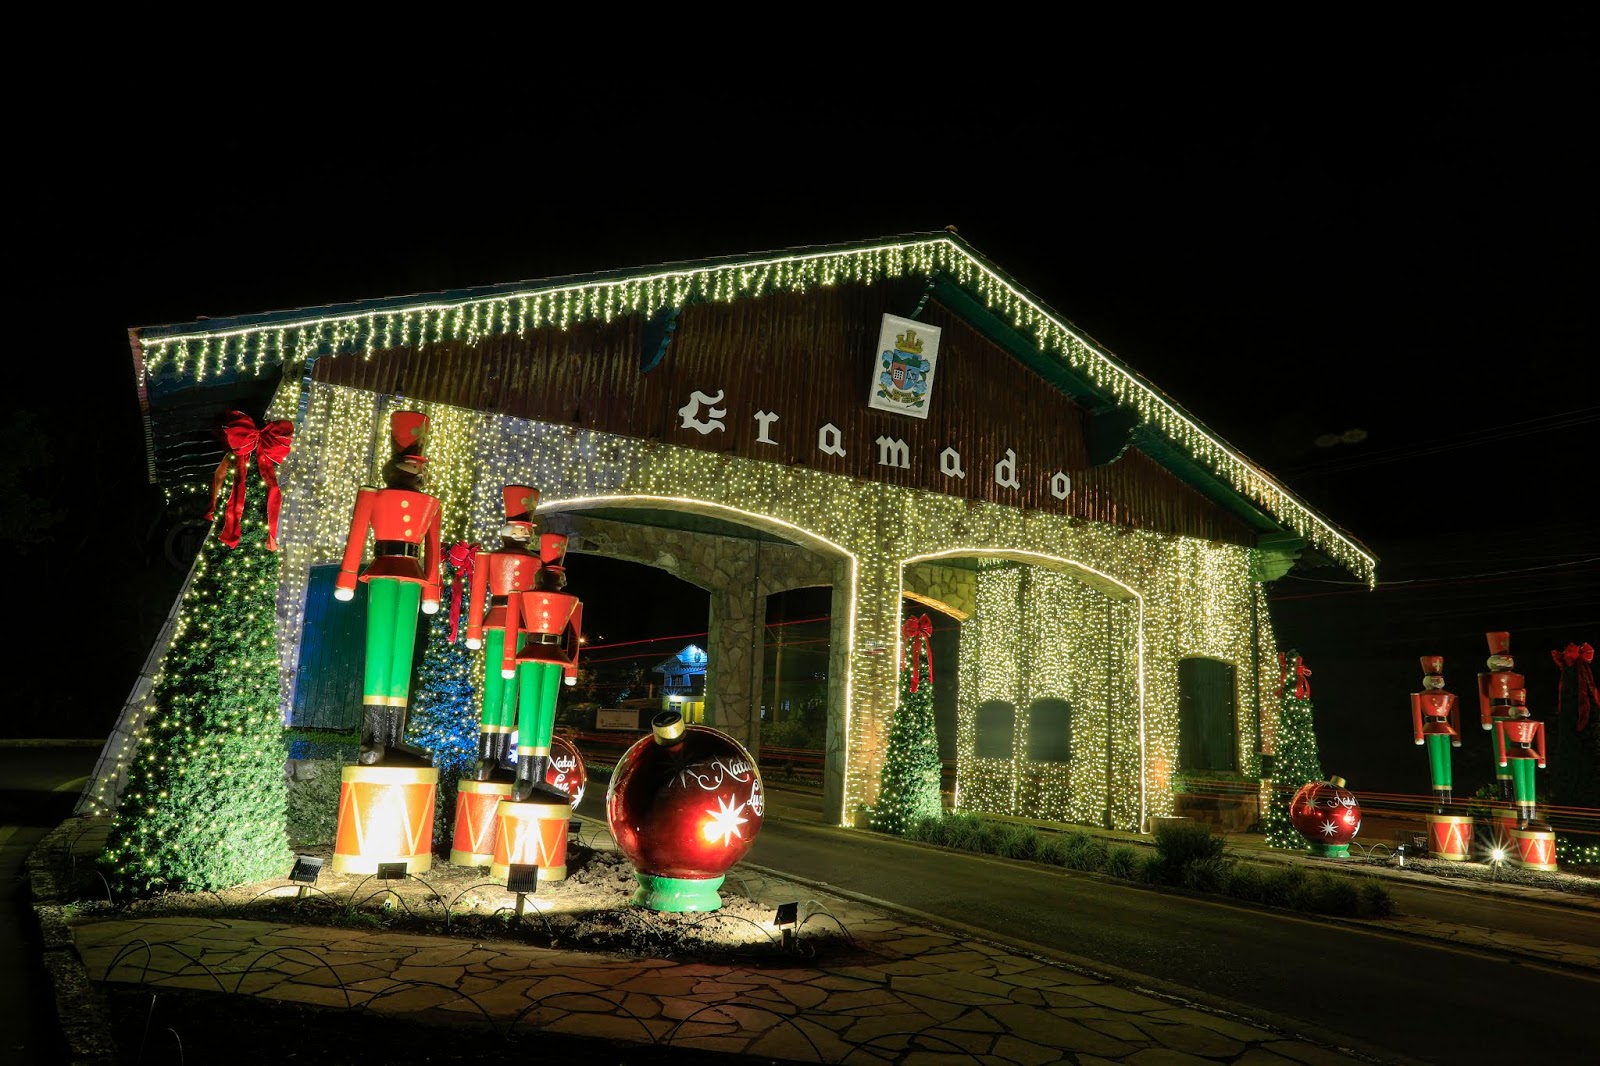 Gramado ilumina a cidade com o início do Natal Luz nesta quinta (26) - São  Marcos Online